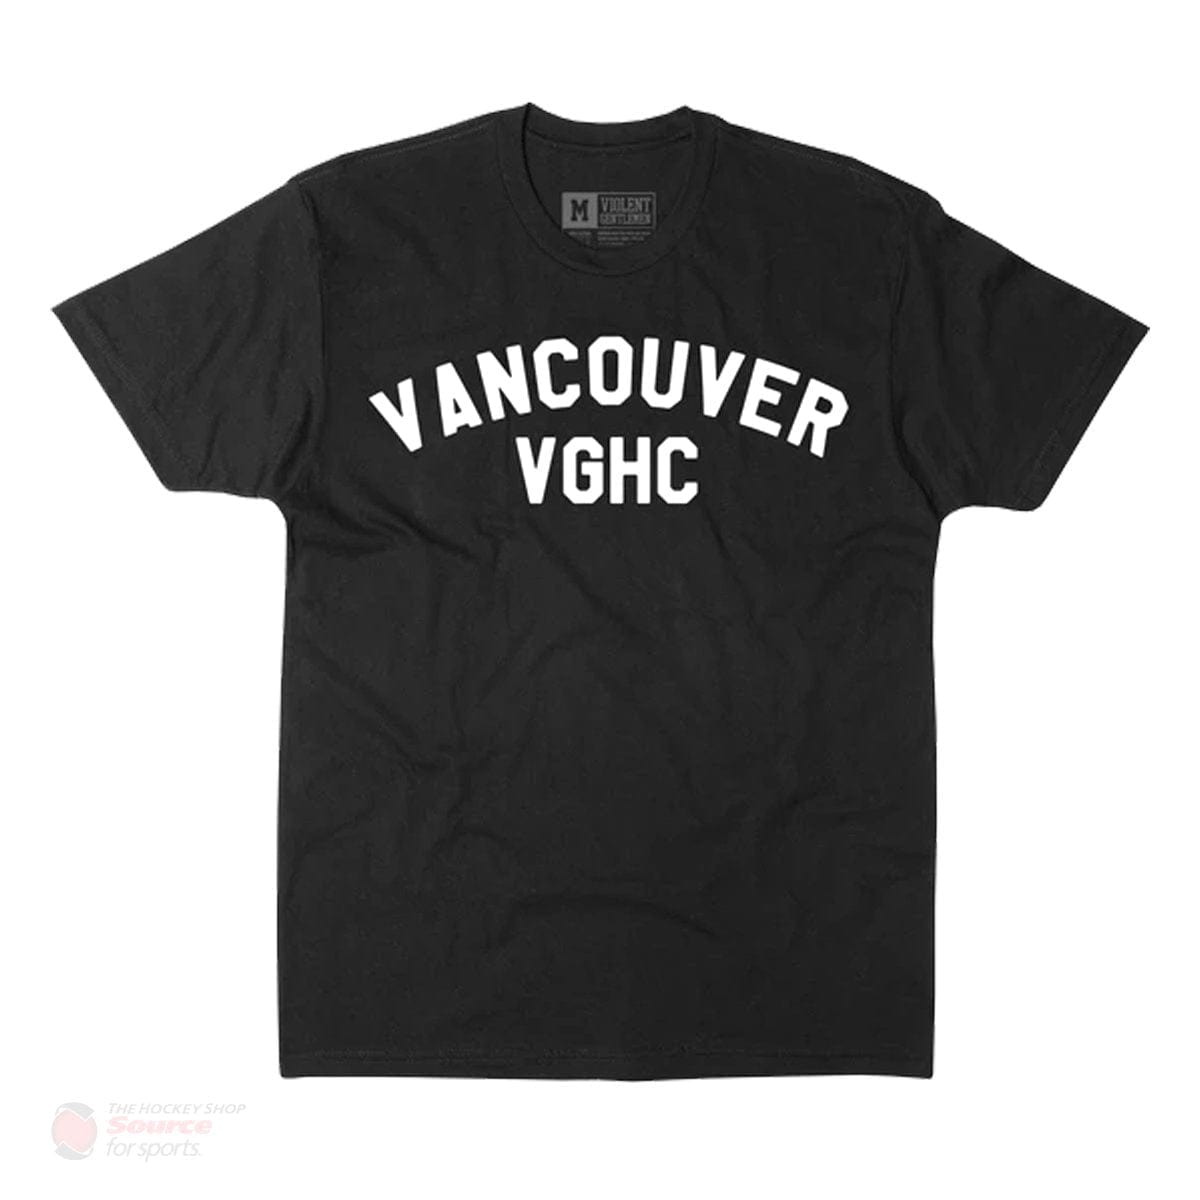 Violent Gentlemen Home Team Vancouver Men's Shirt